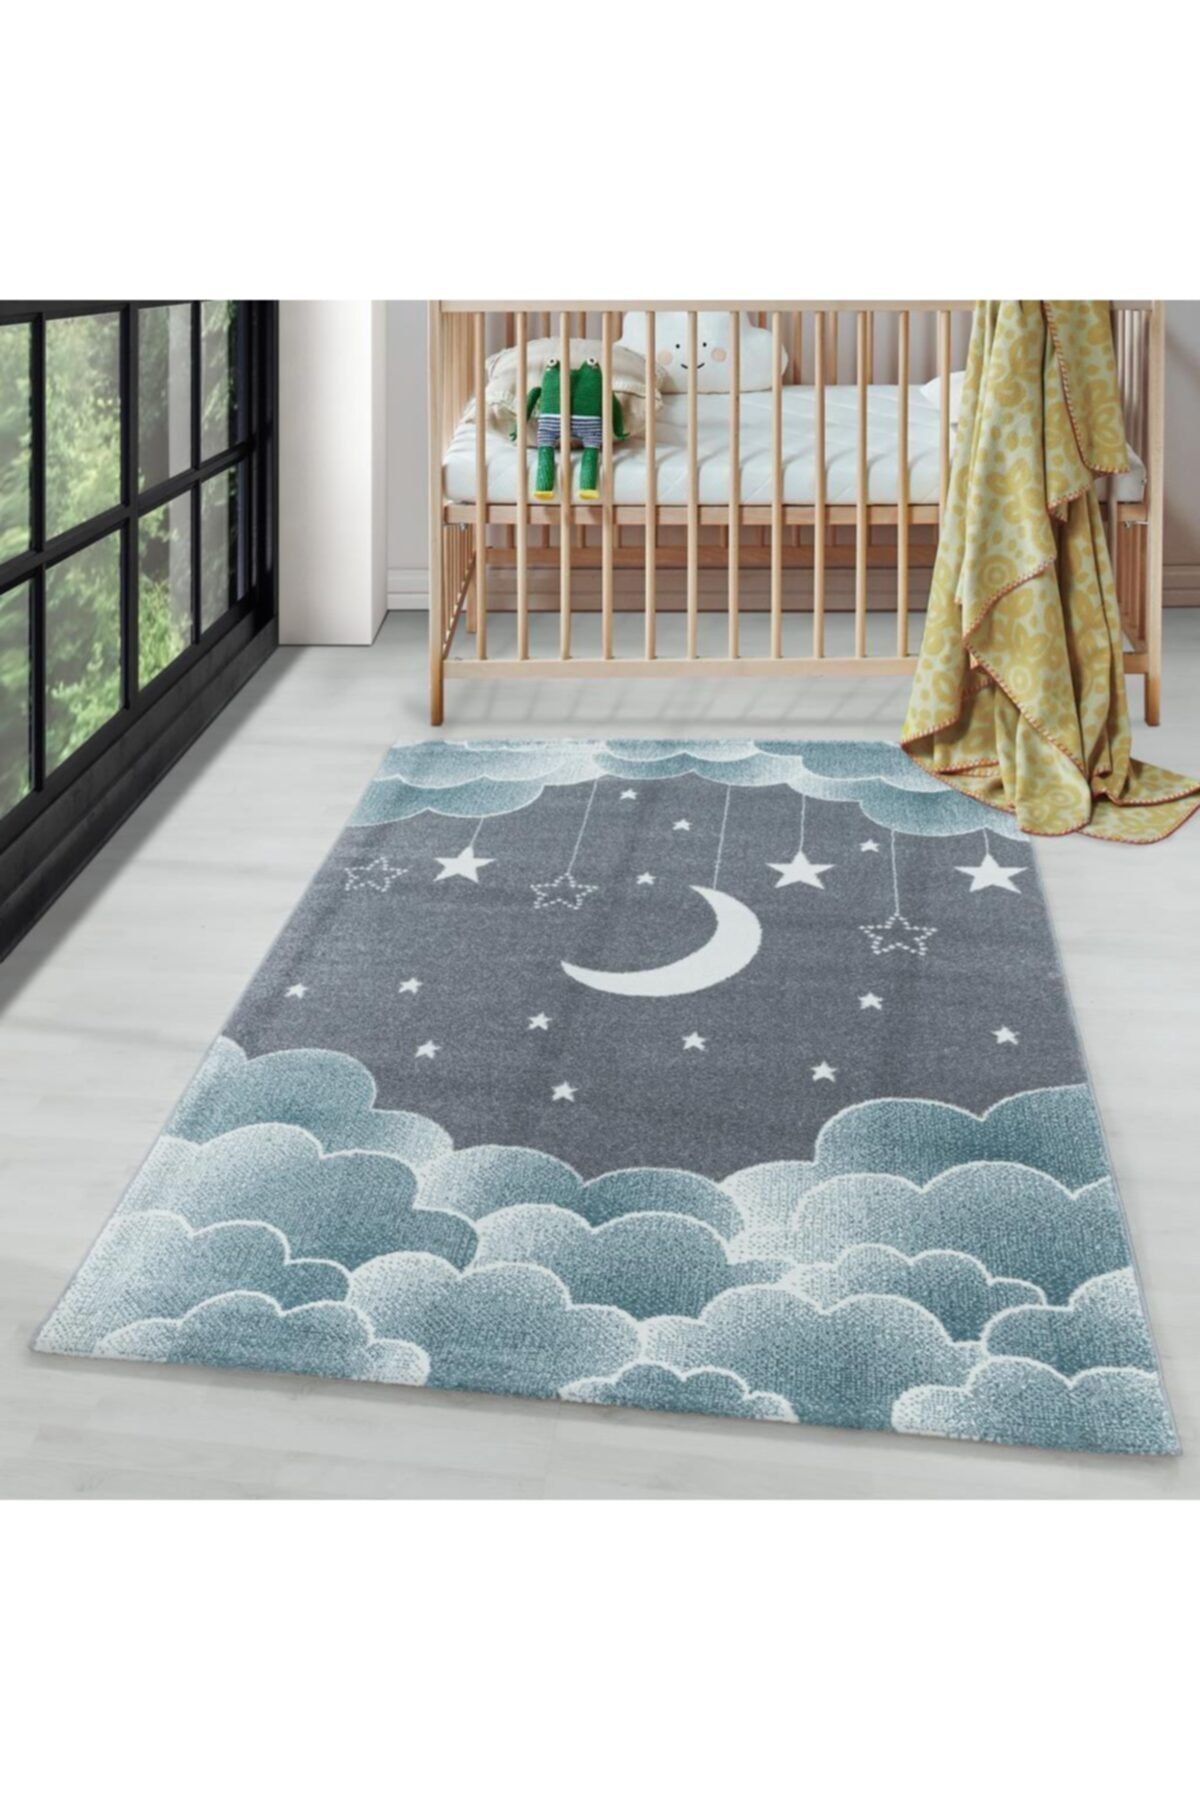 AYYILDIZ Çocuk Bebek Odası Halısı Bulut Ay Yıldız Desenli Mavi Gri Tonlarda